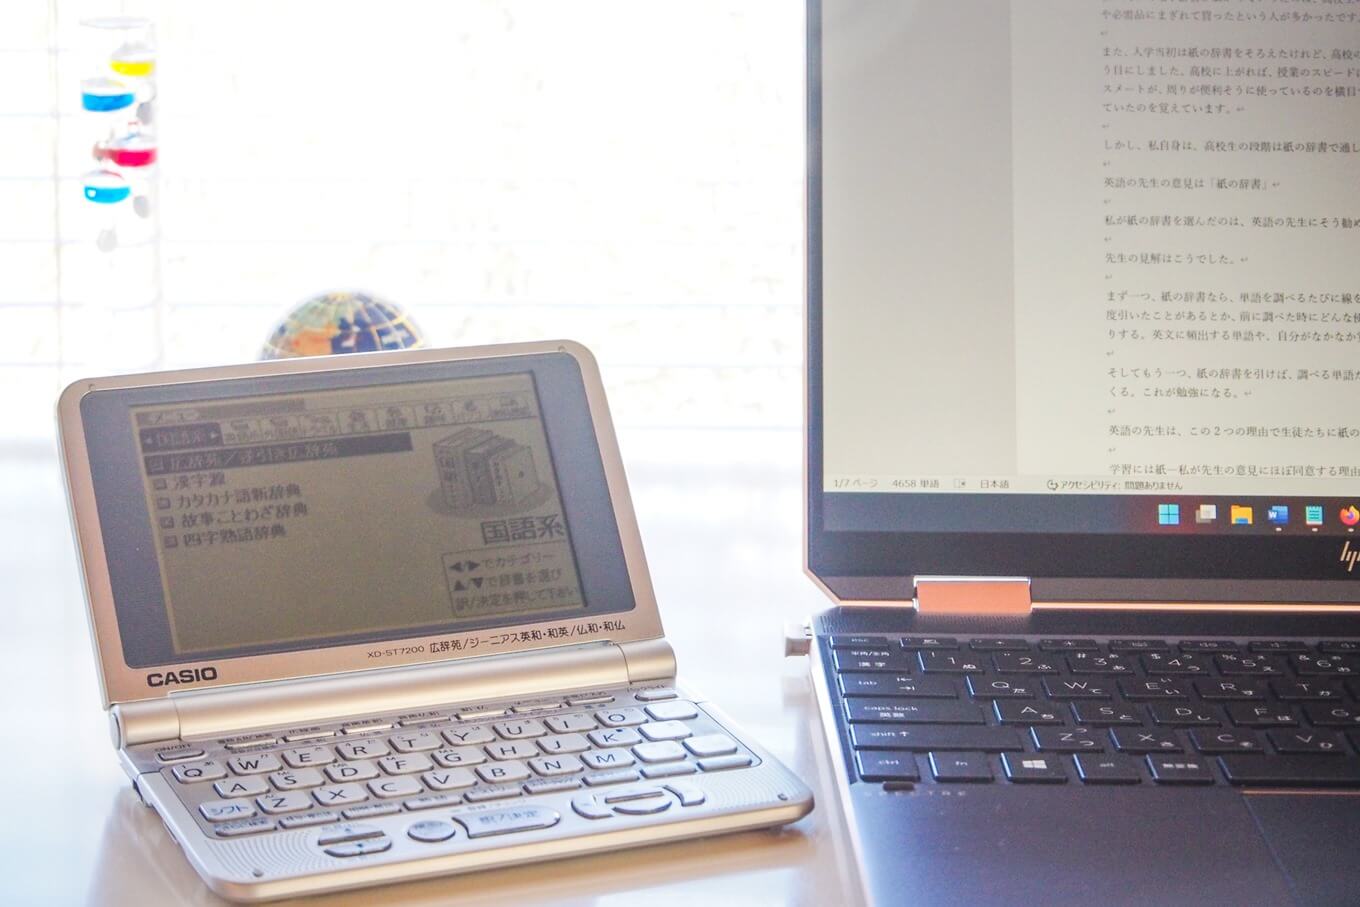 ノートパソコンと電子辞書が置いてあるデスクの写真